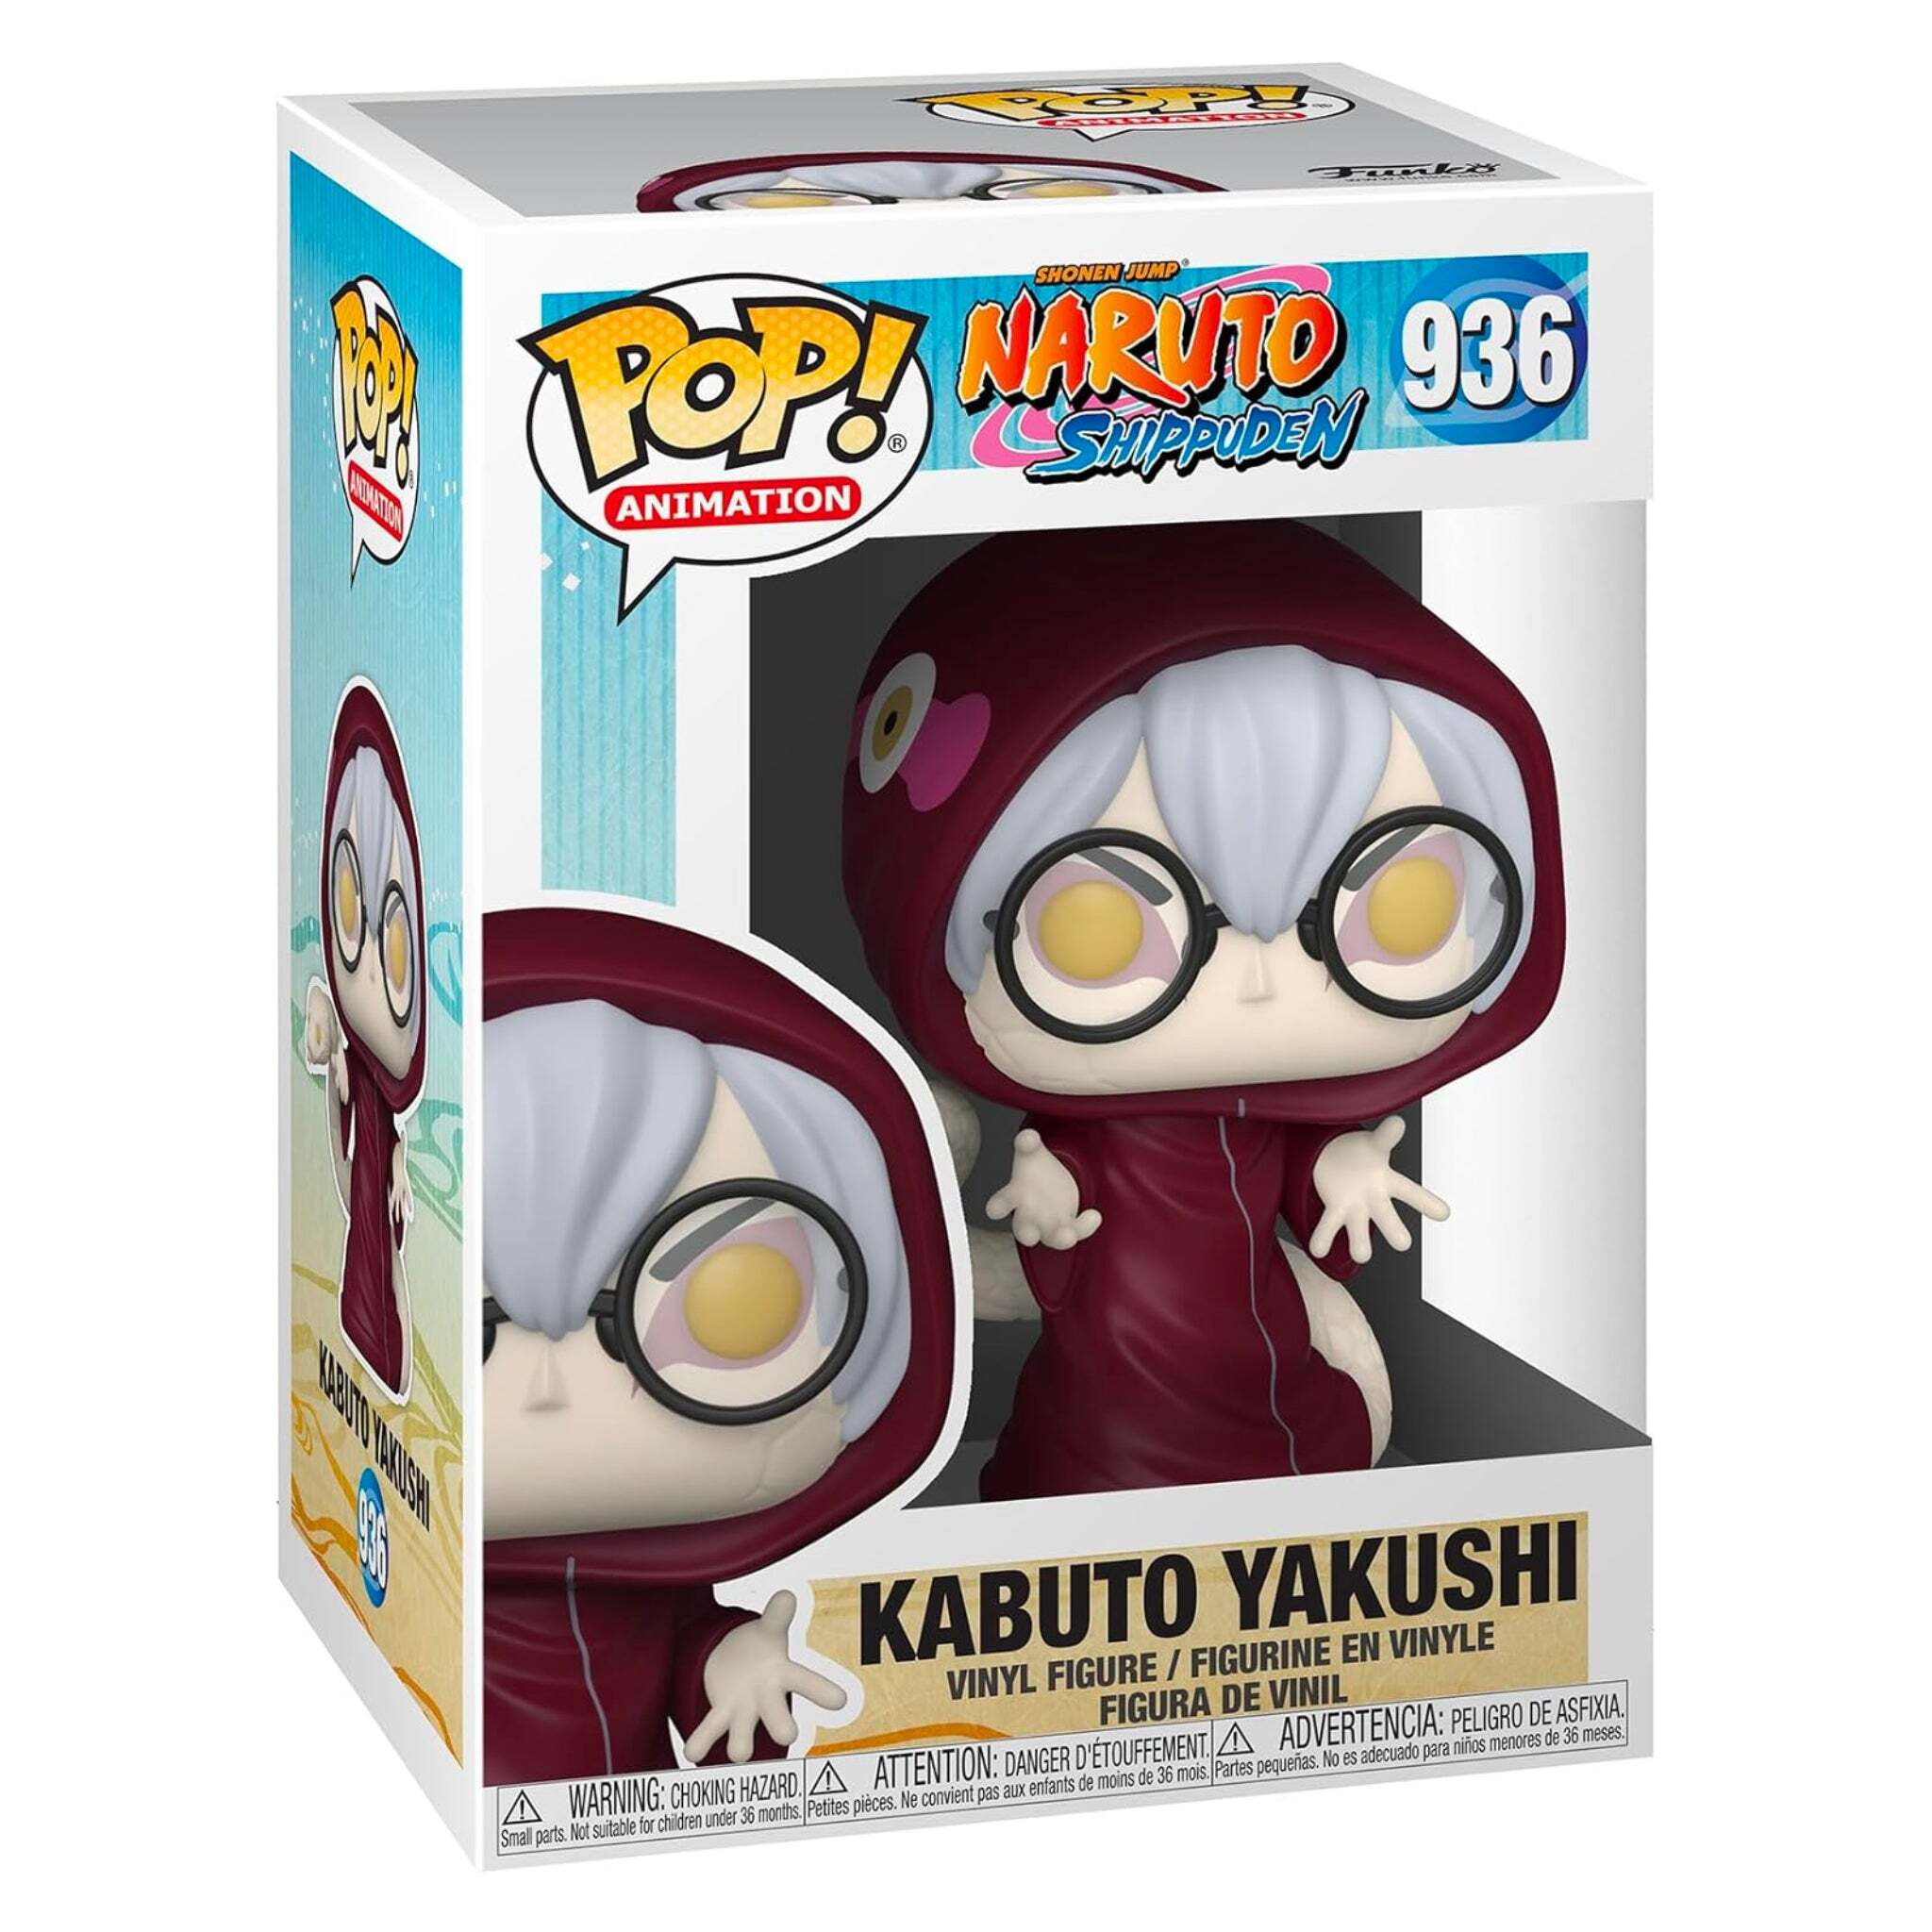 Kabuto Yakushi Funko Pop!